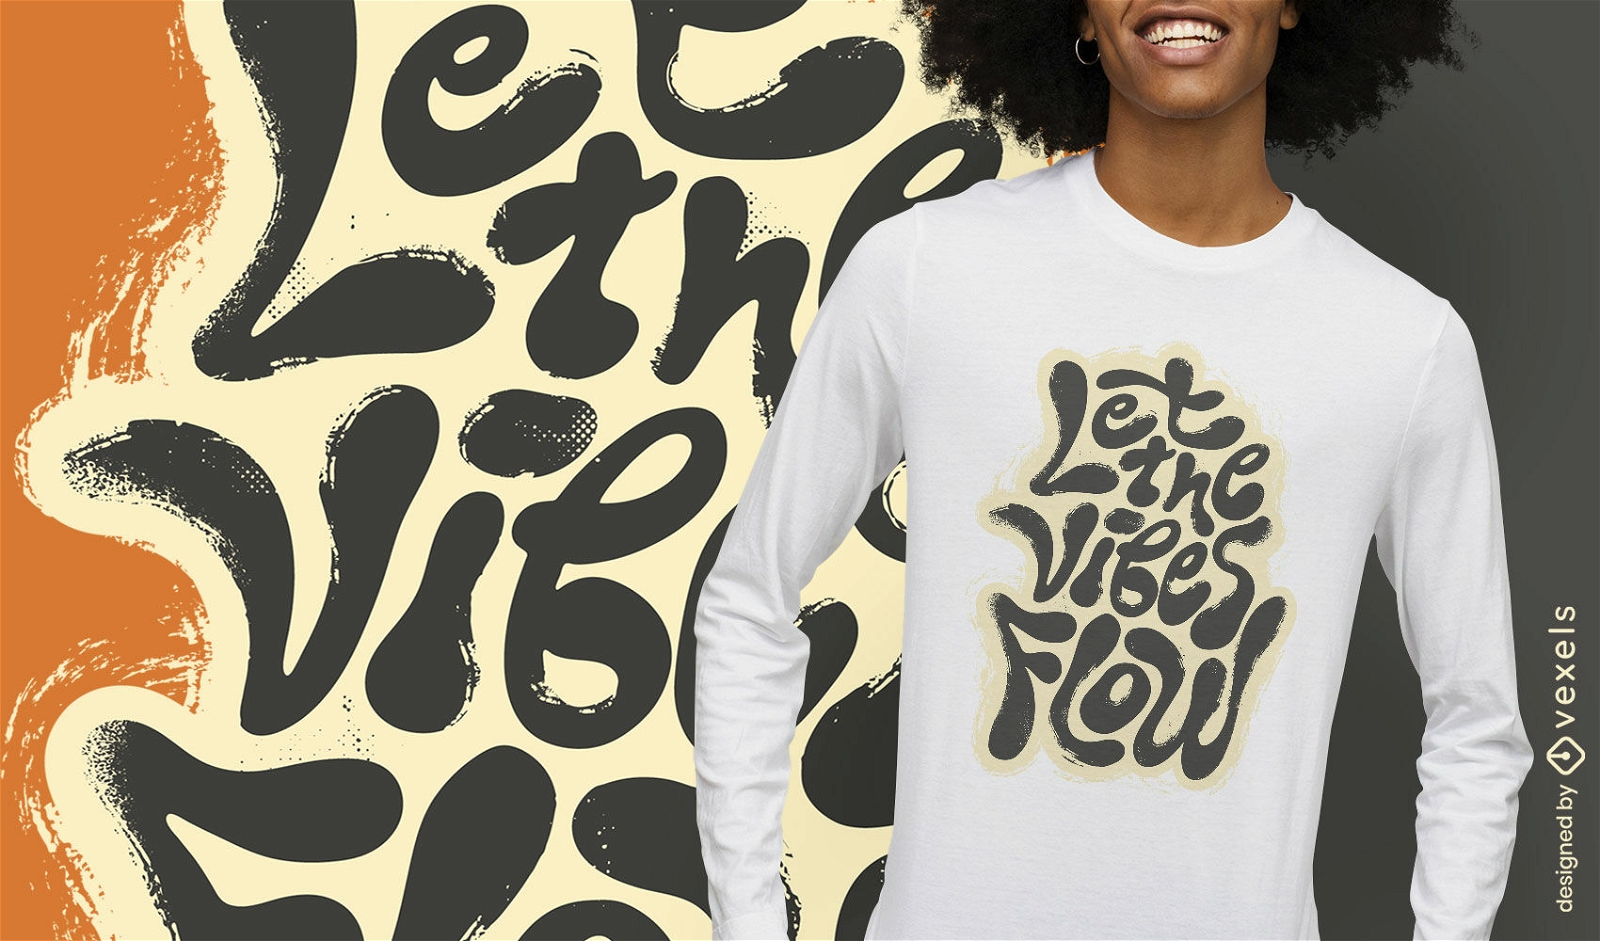 Lassen Sie die Stimmung flie?en Zitat T-Shirt-Design